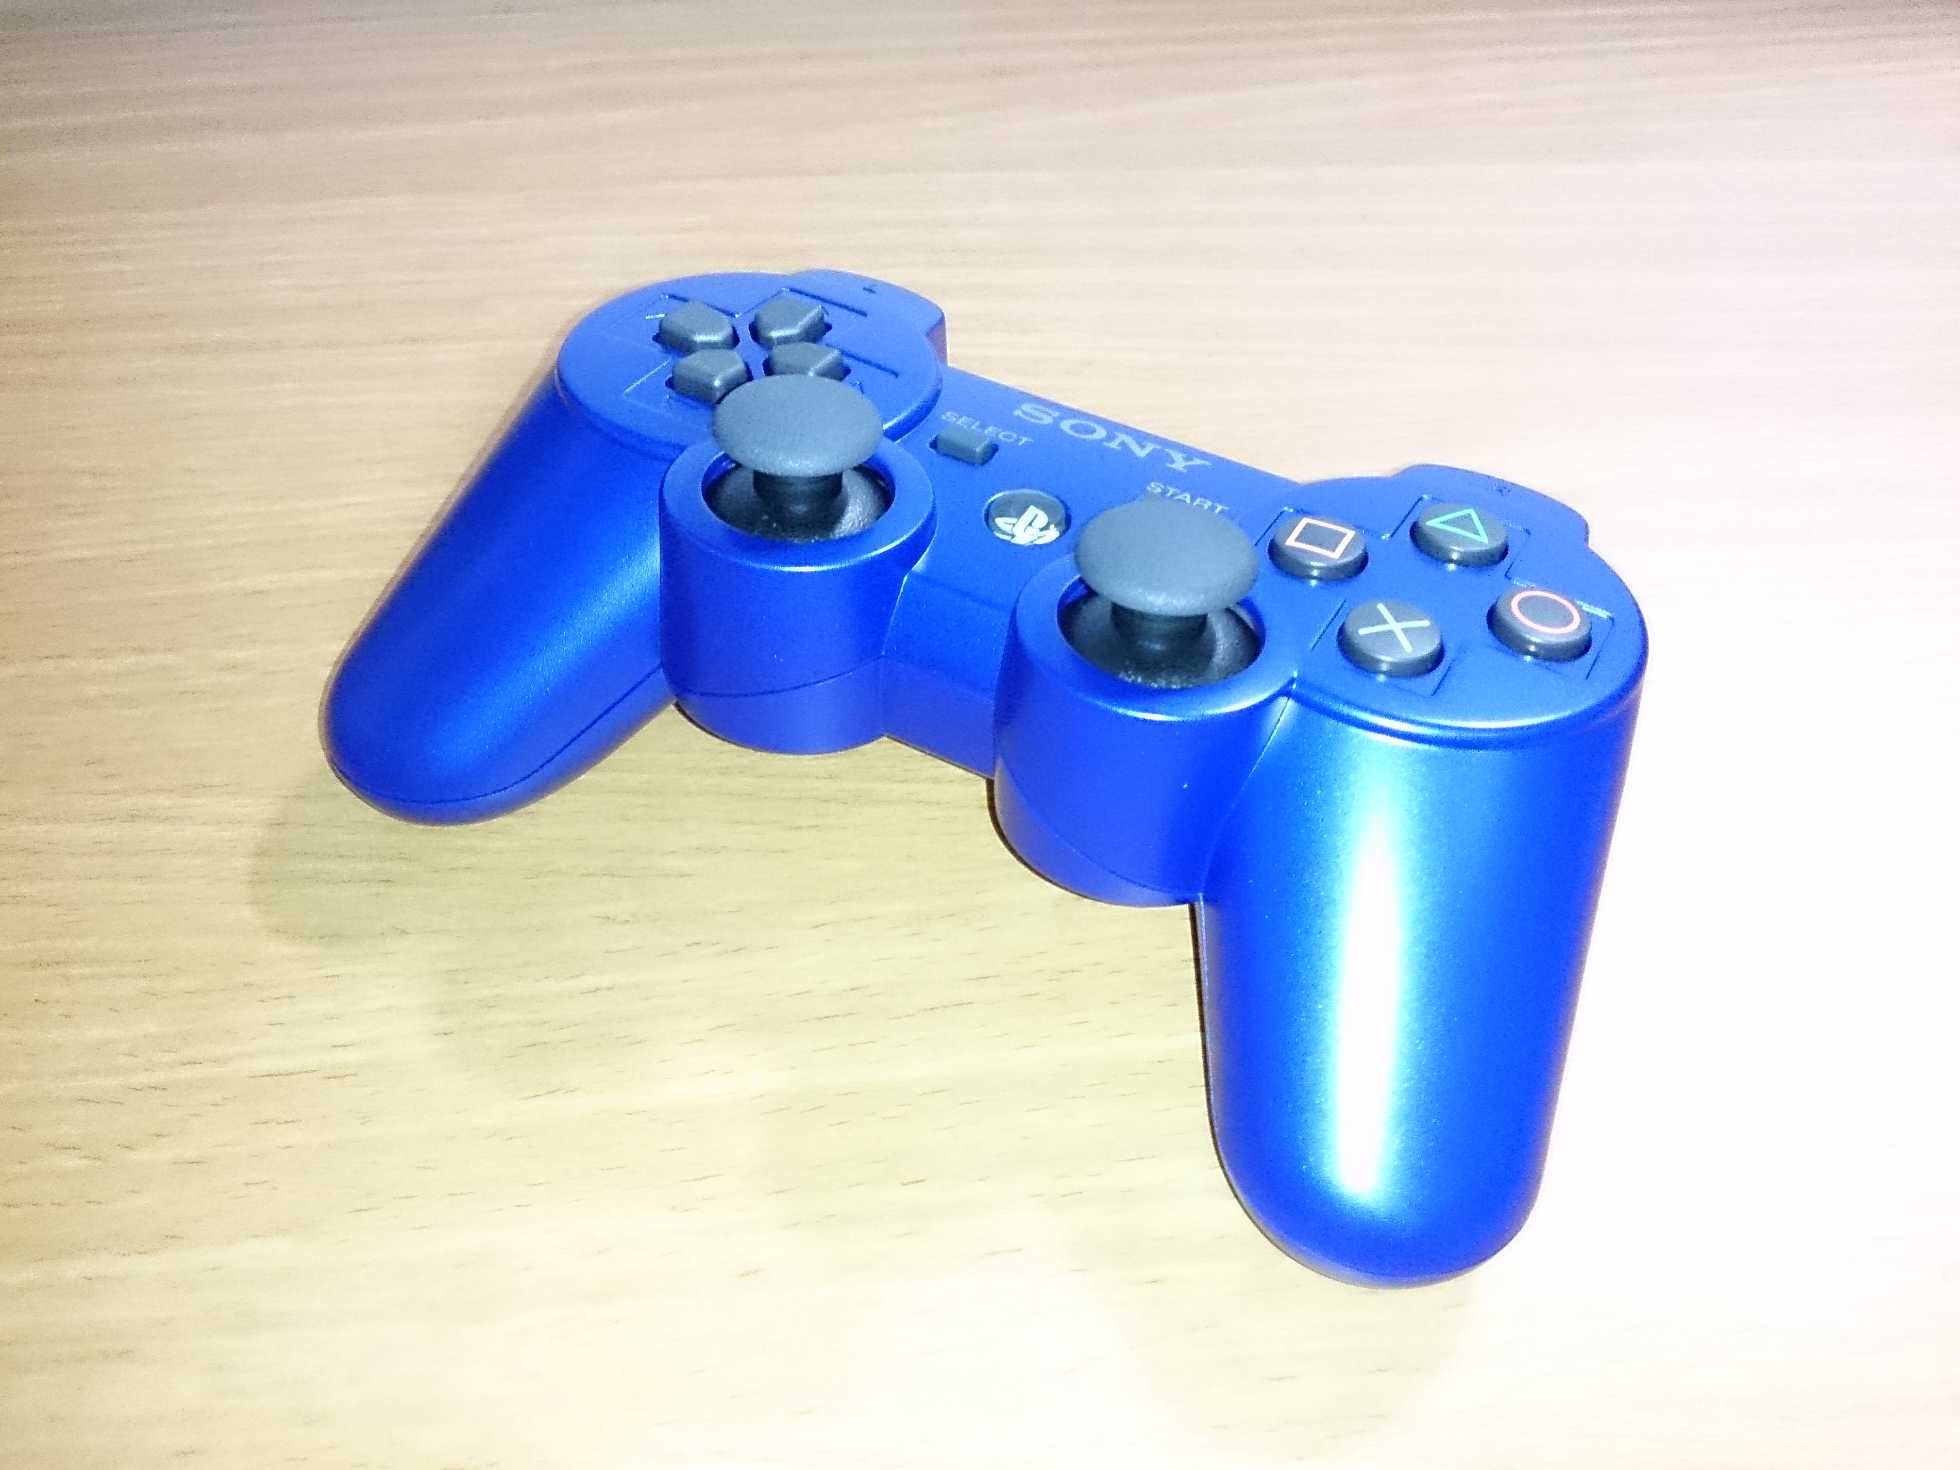 PS3のコントローラー DUALSHOCK3メタリック・ブルーが届いたよ